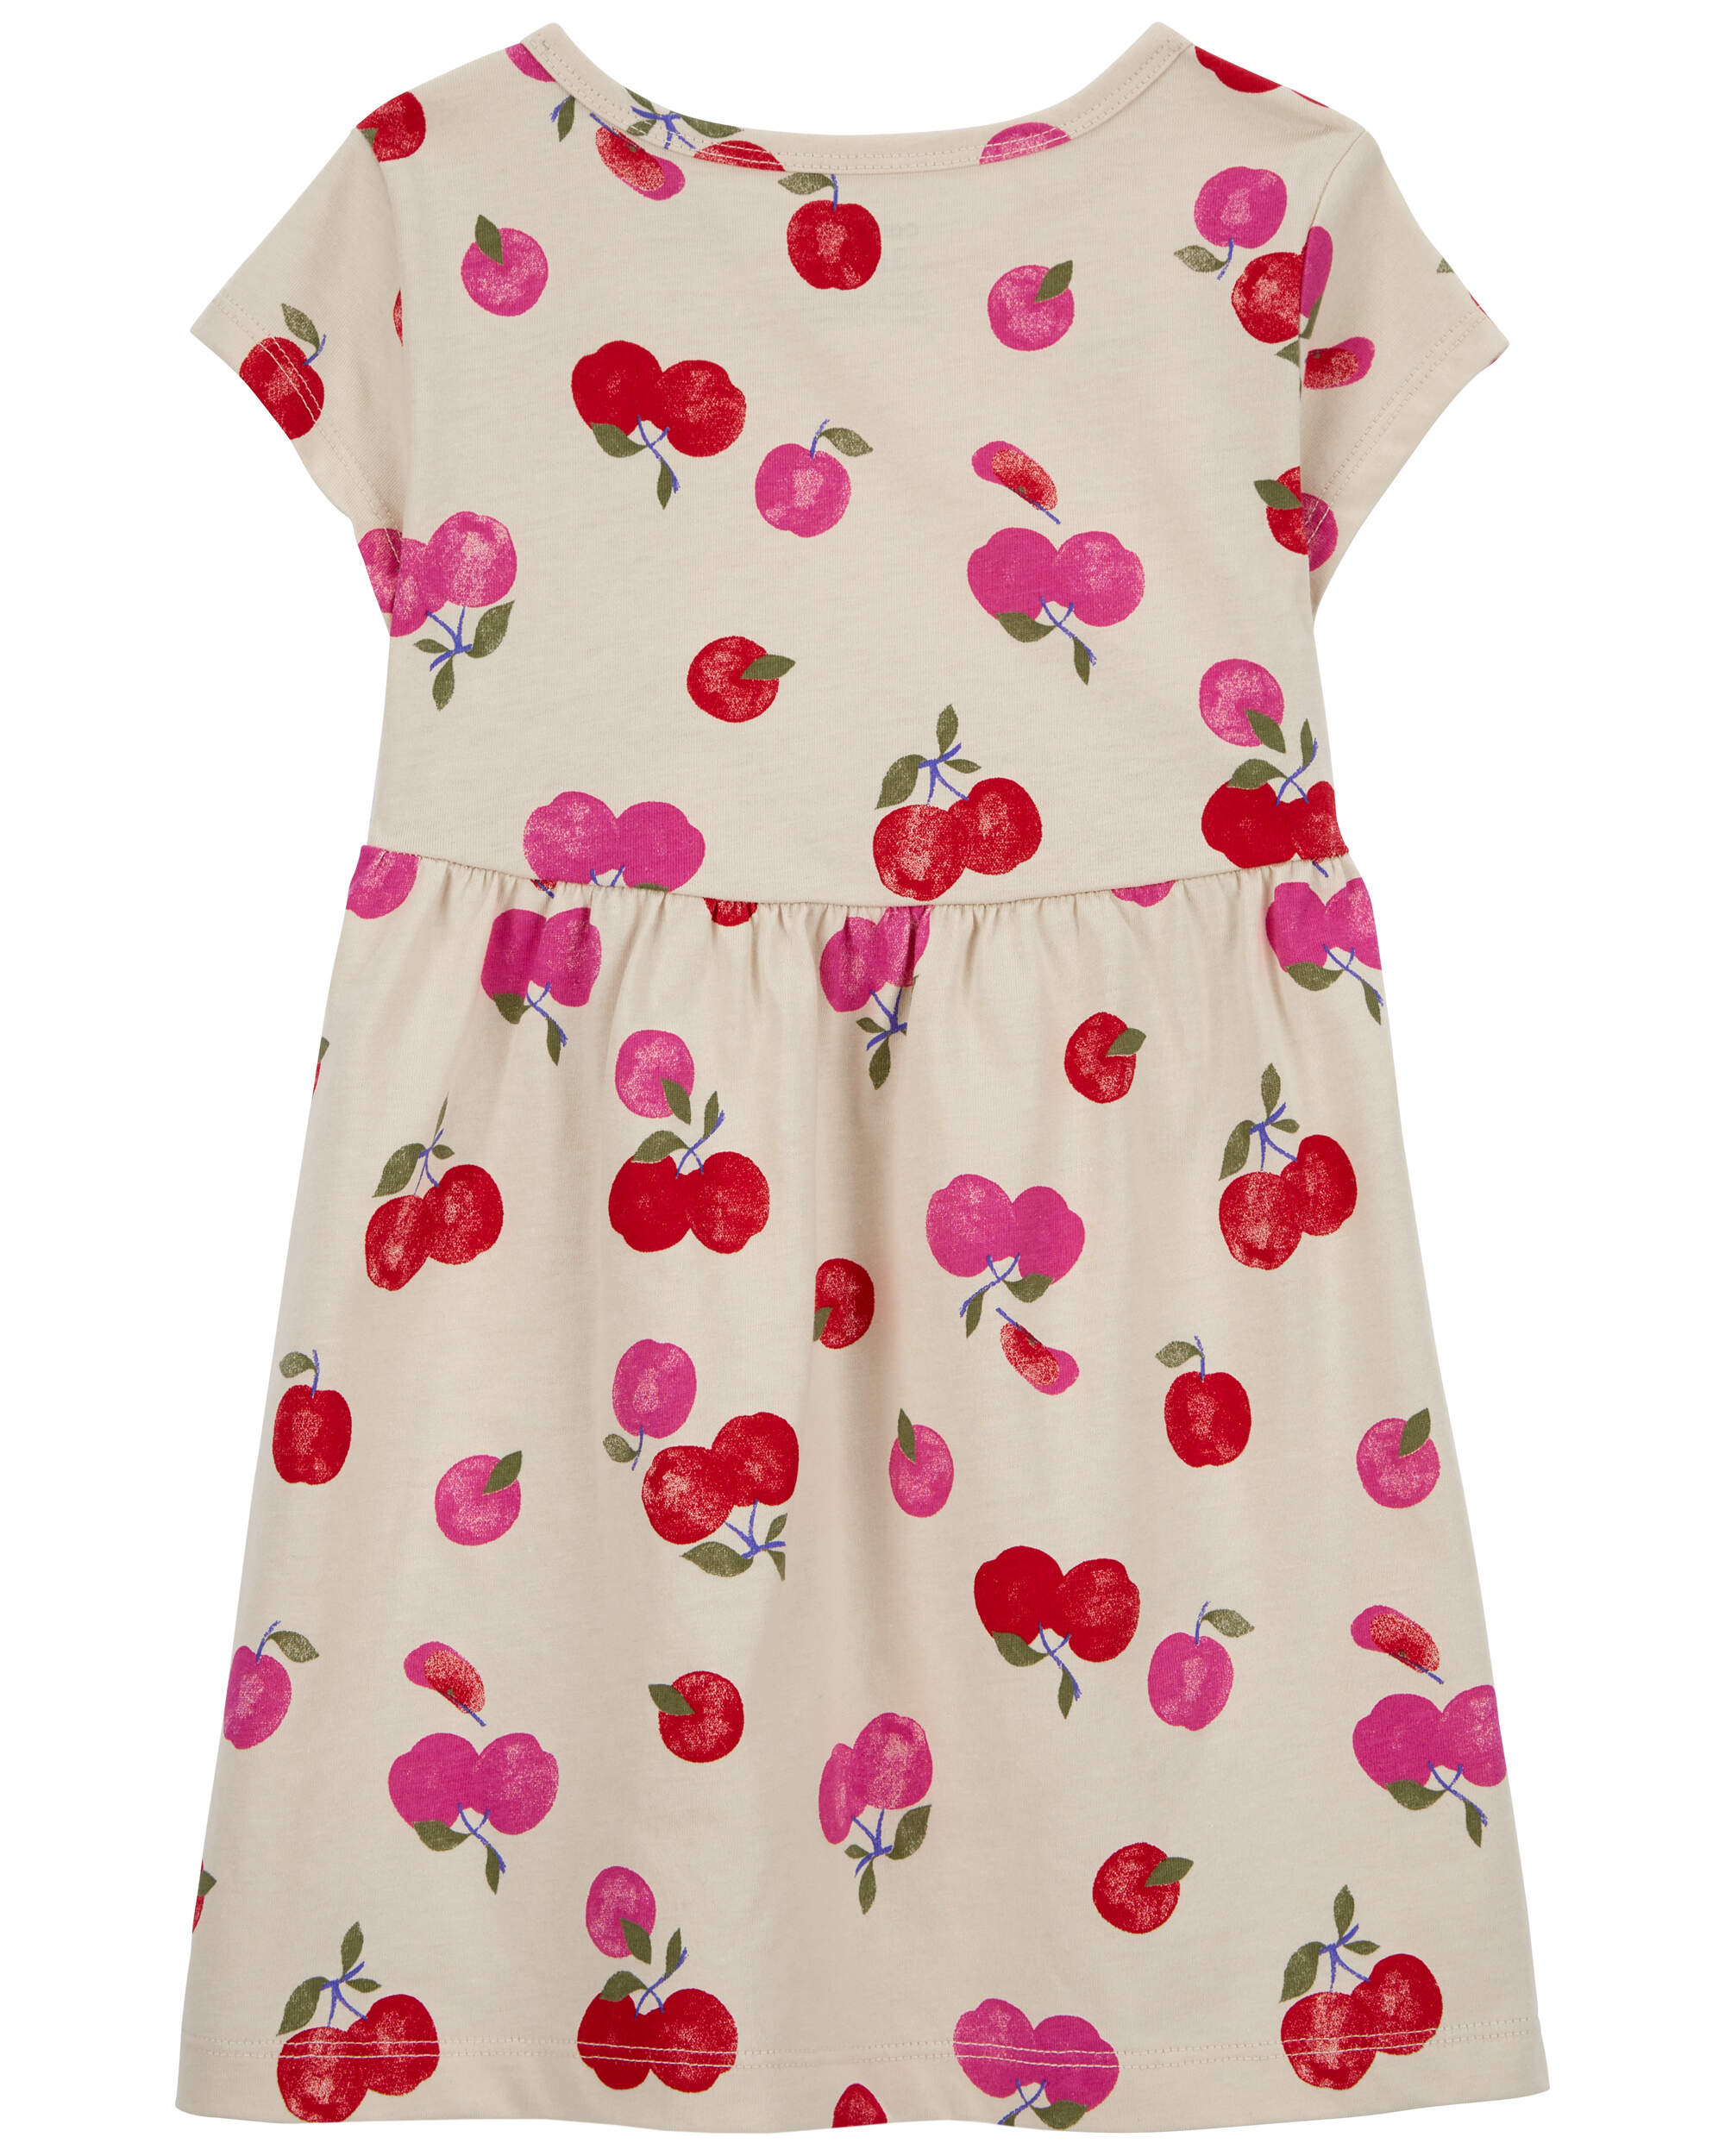 Toddler Cherry Jersey Dress